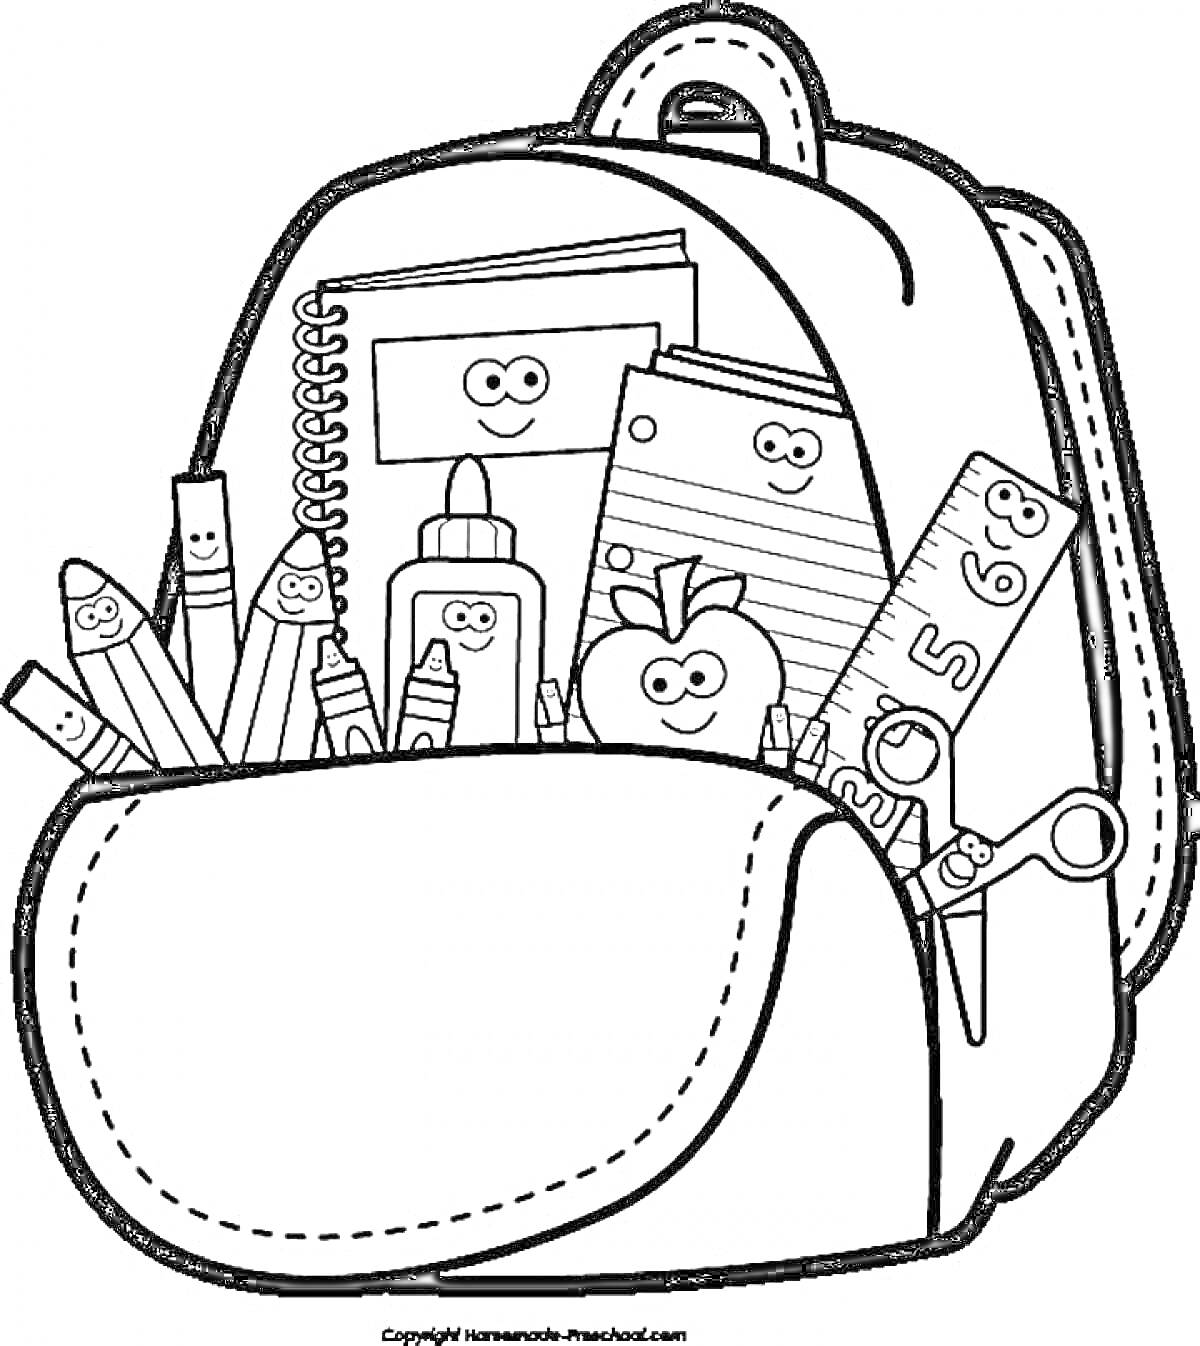 Рюкзак с принадлежностями для учебы, содержащий карандаши, клей, линейку, блокнот, яблоко, ножницы и бумагу